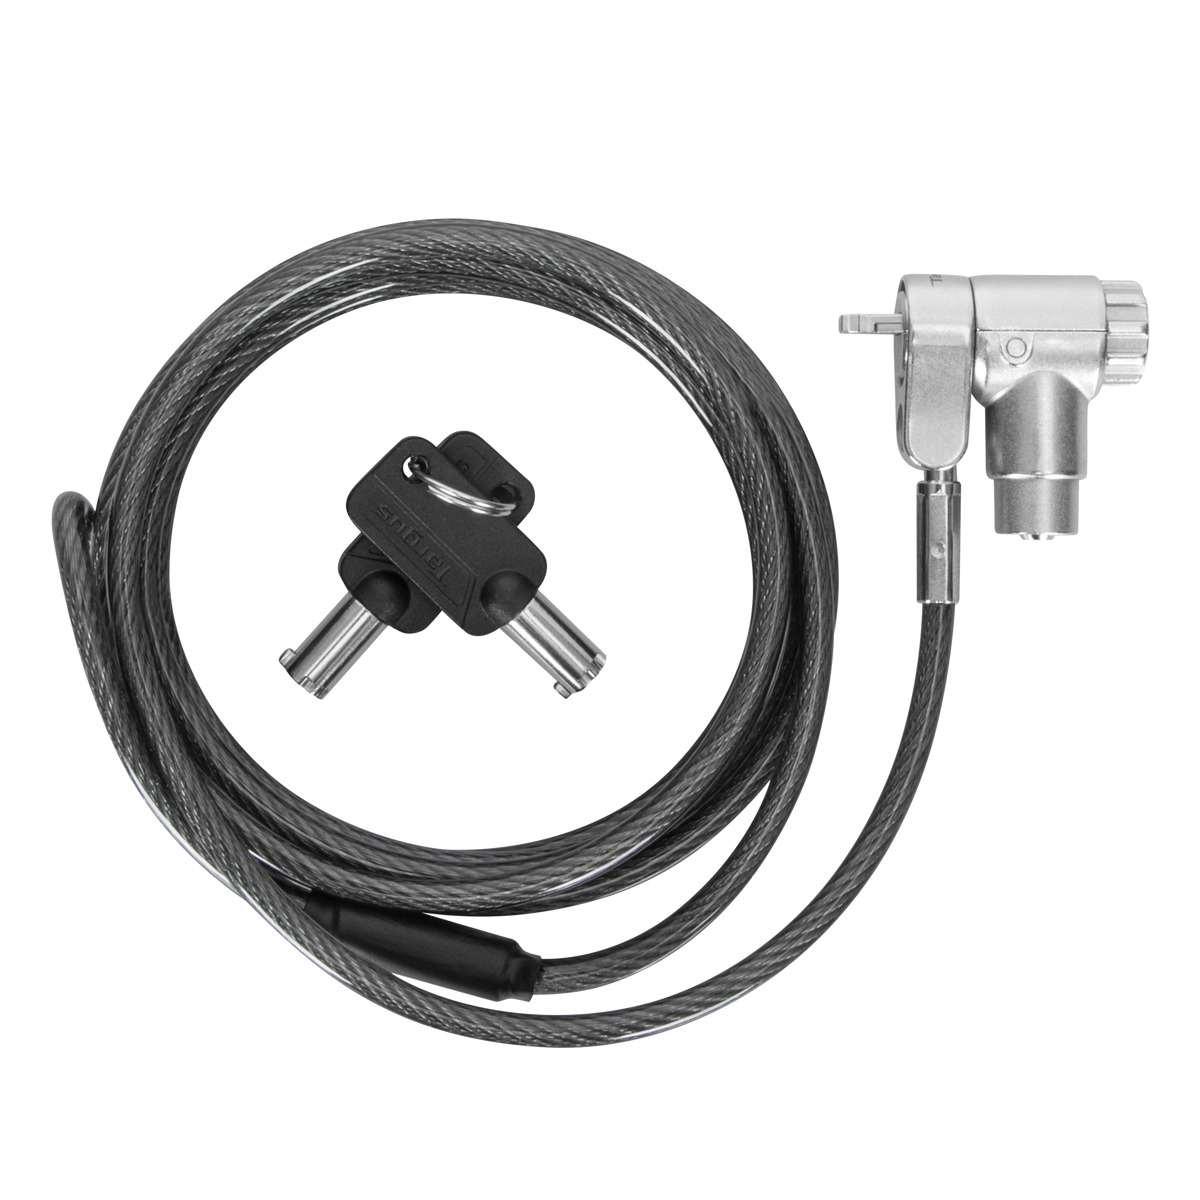  - DEFCON™ Ultimate Universal Keyed Cable Candado con cabezal adaptable Candado 1